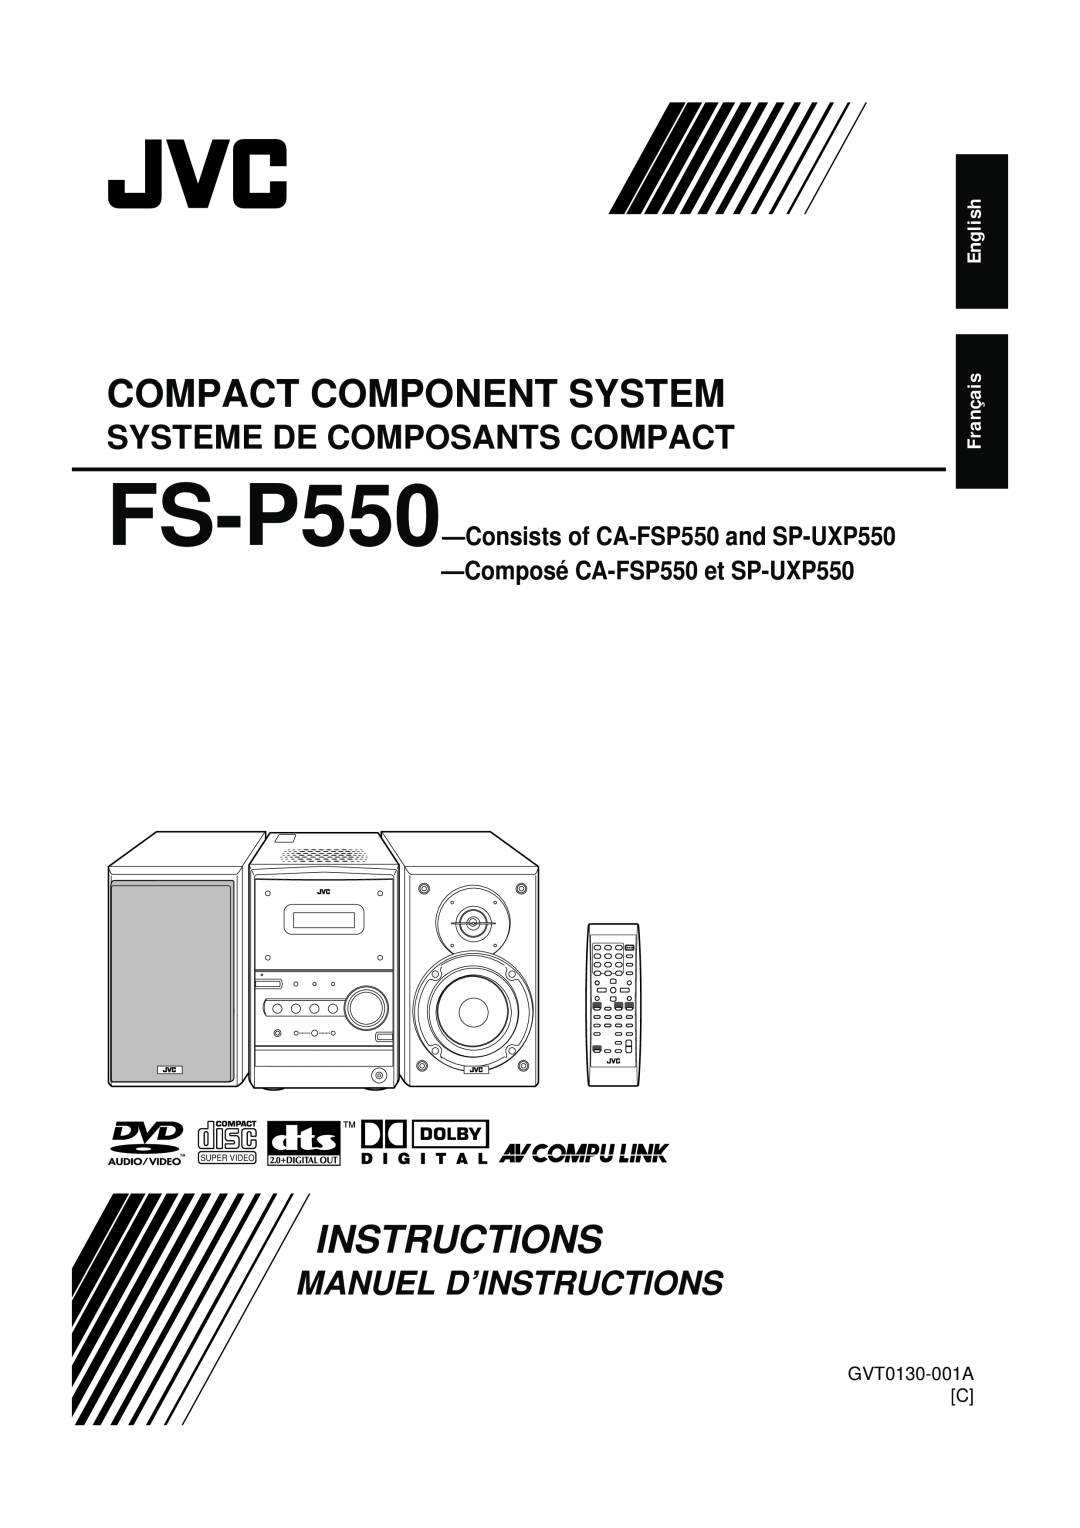 JVC FS-P550 manual English Français, GVT0130-001AC, Compact Component System, Instructions, Systeme De Composants Compact 